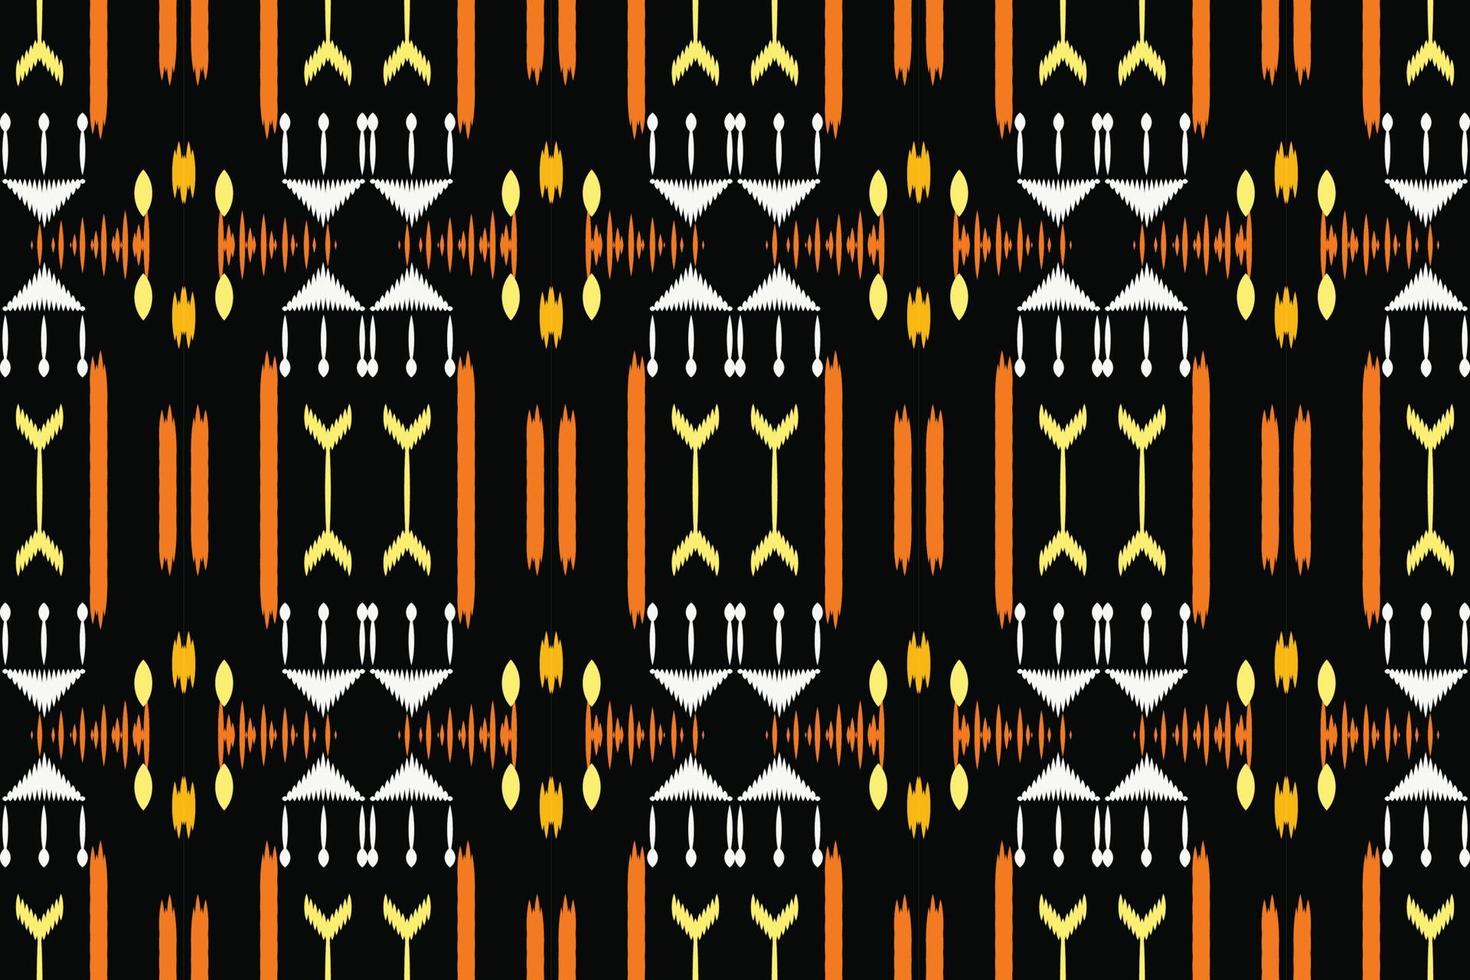 filippina ikat floreale tribale colore Borneo scandinavo batik boemo struttura digitale vettore design per Stampa saree Kurti tessuto spazzola simboli campioni